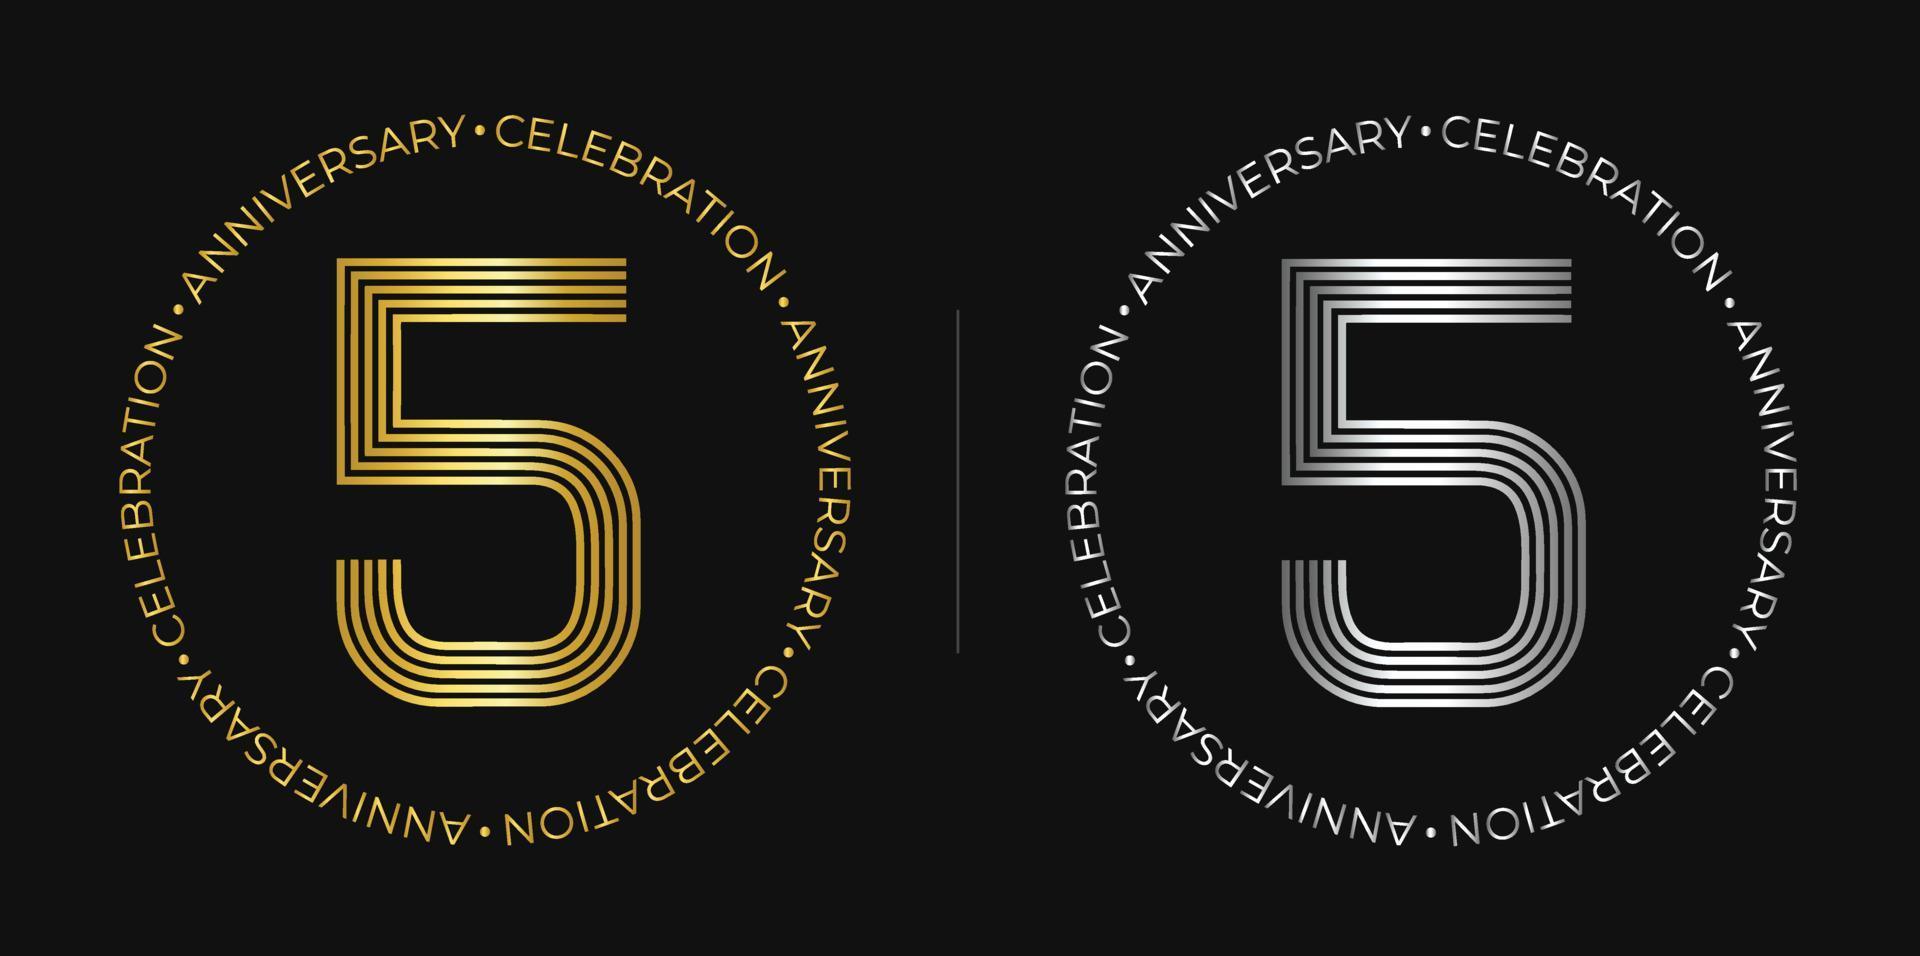 5. geburtstag. fünf jahre jubiläumsfeier banner in goldenen und silbernen farben. kreisförmiges Logo mit originellem Nummerndesign in eleganten Linien. vektor